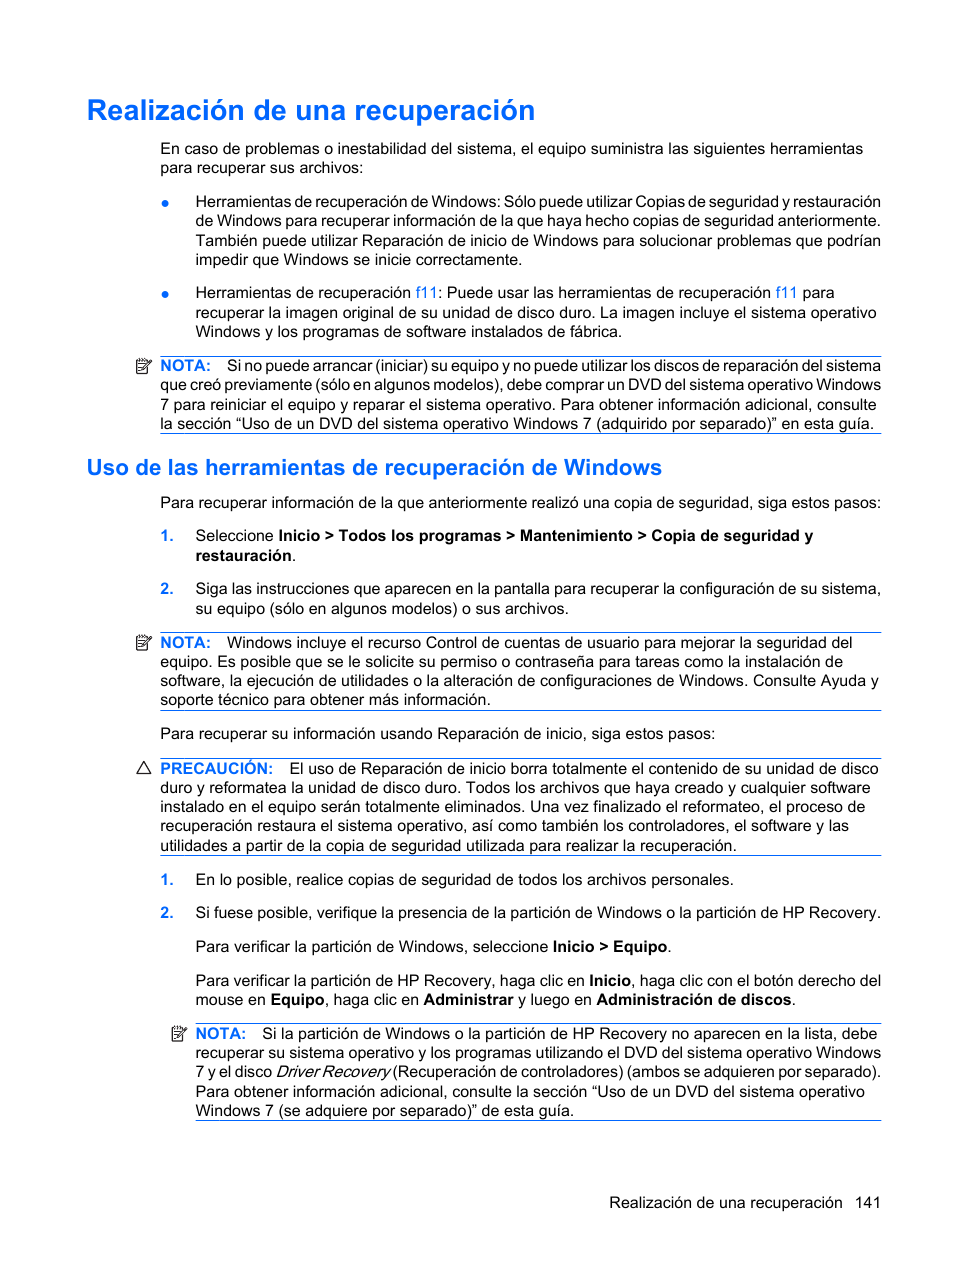 Realización de una recuperación, Uso de las herramientas de recuperación de windows | HP EliteBook 8440p Manual del usuario | Página 153 / 181